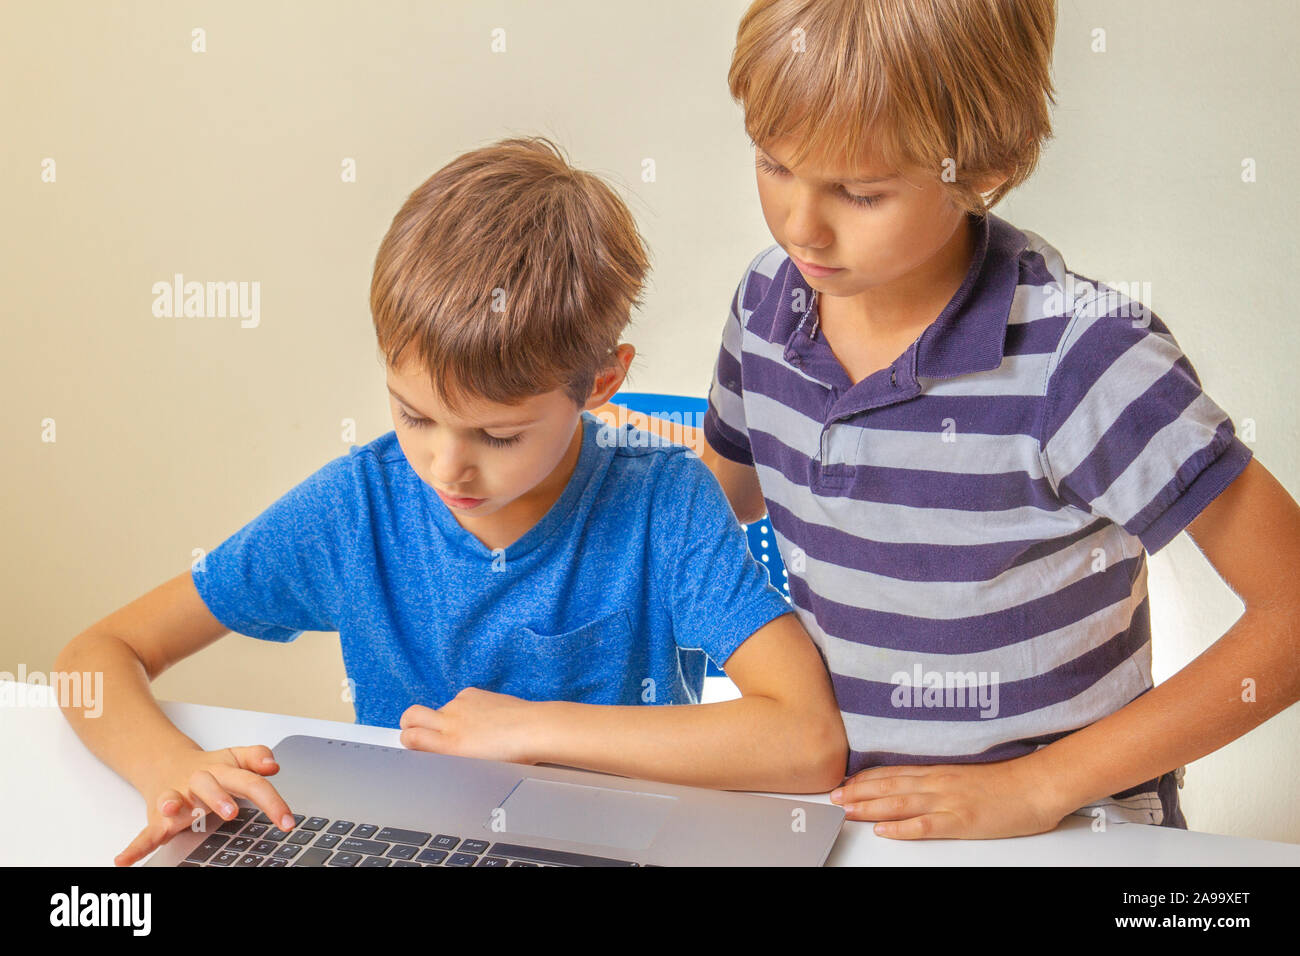 Fokussierte kind Eingabe laptop computer und andere Kind ihm helfen. Schule, Lernen, e-Learning - Konzept Stockfoto